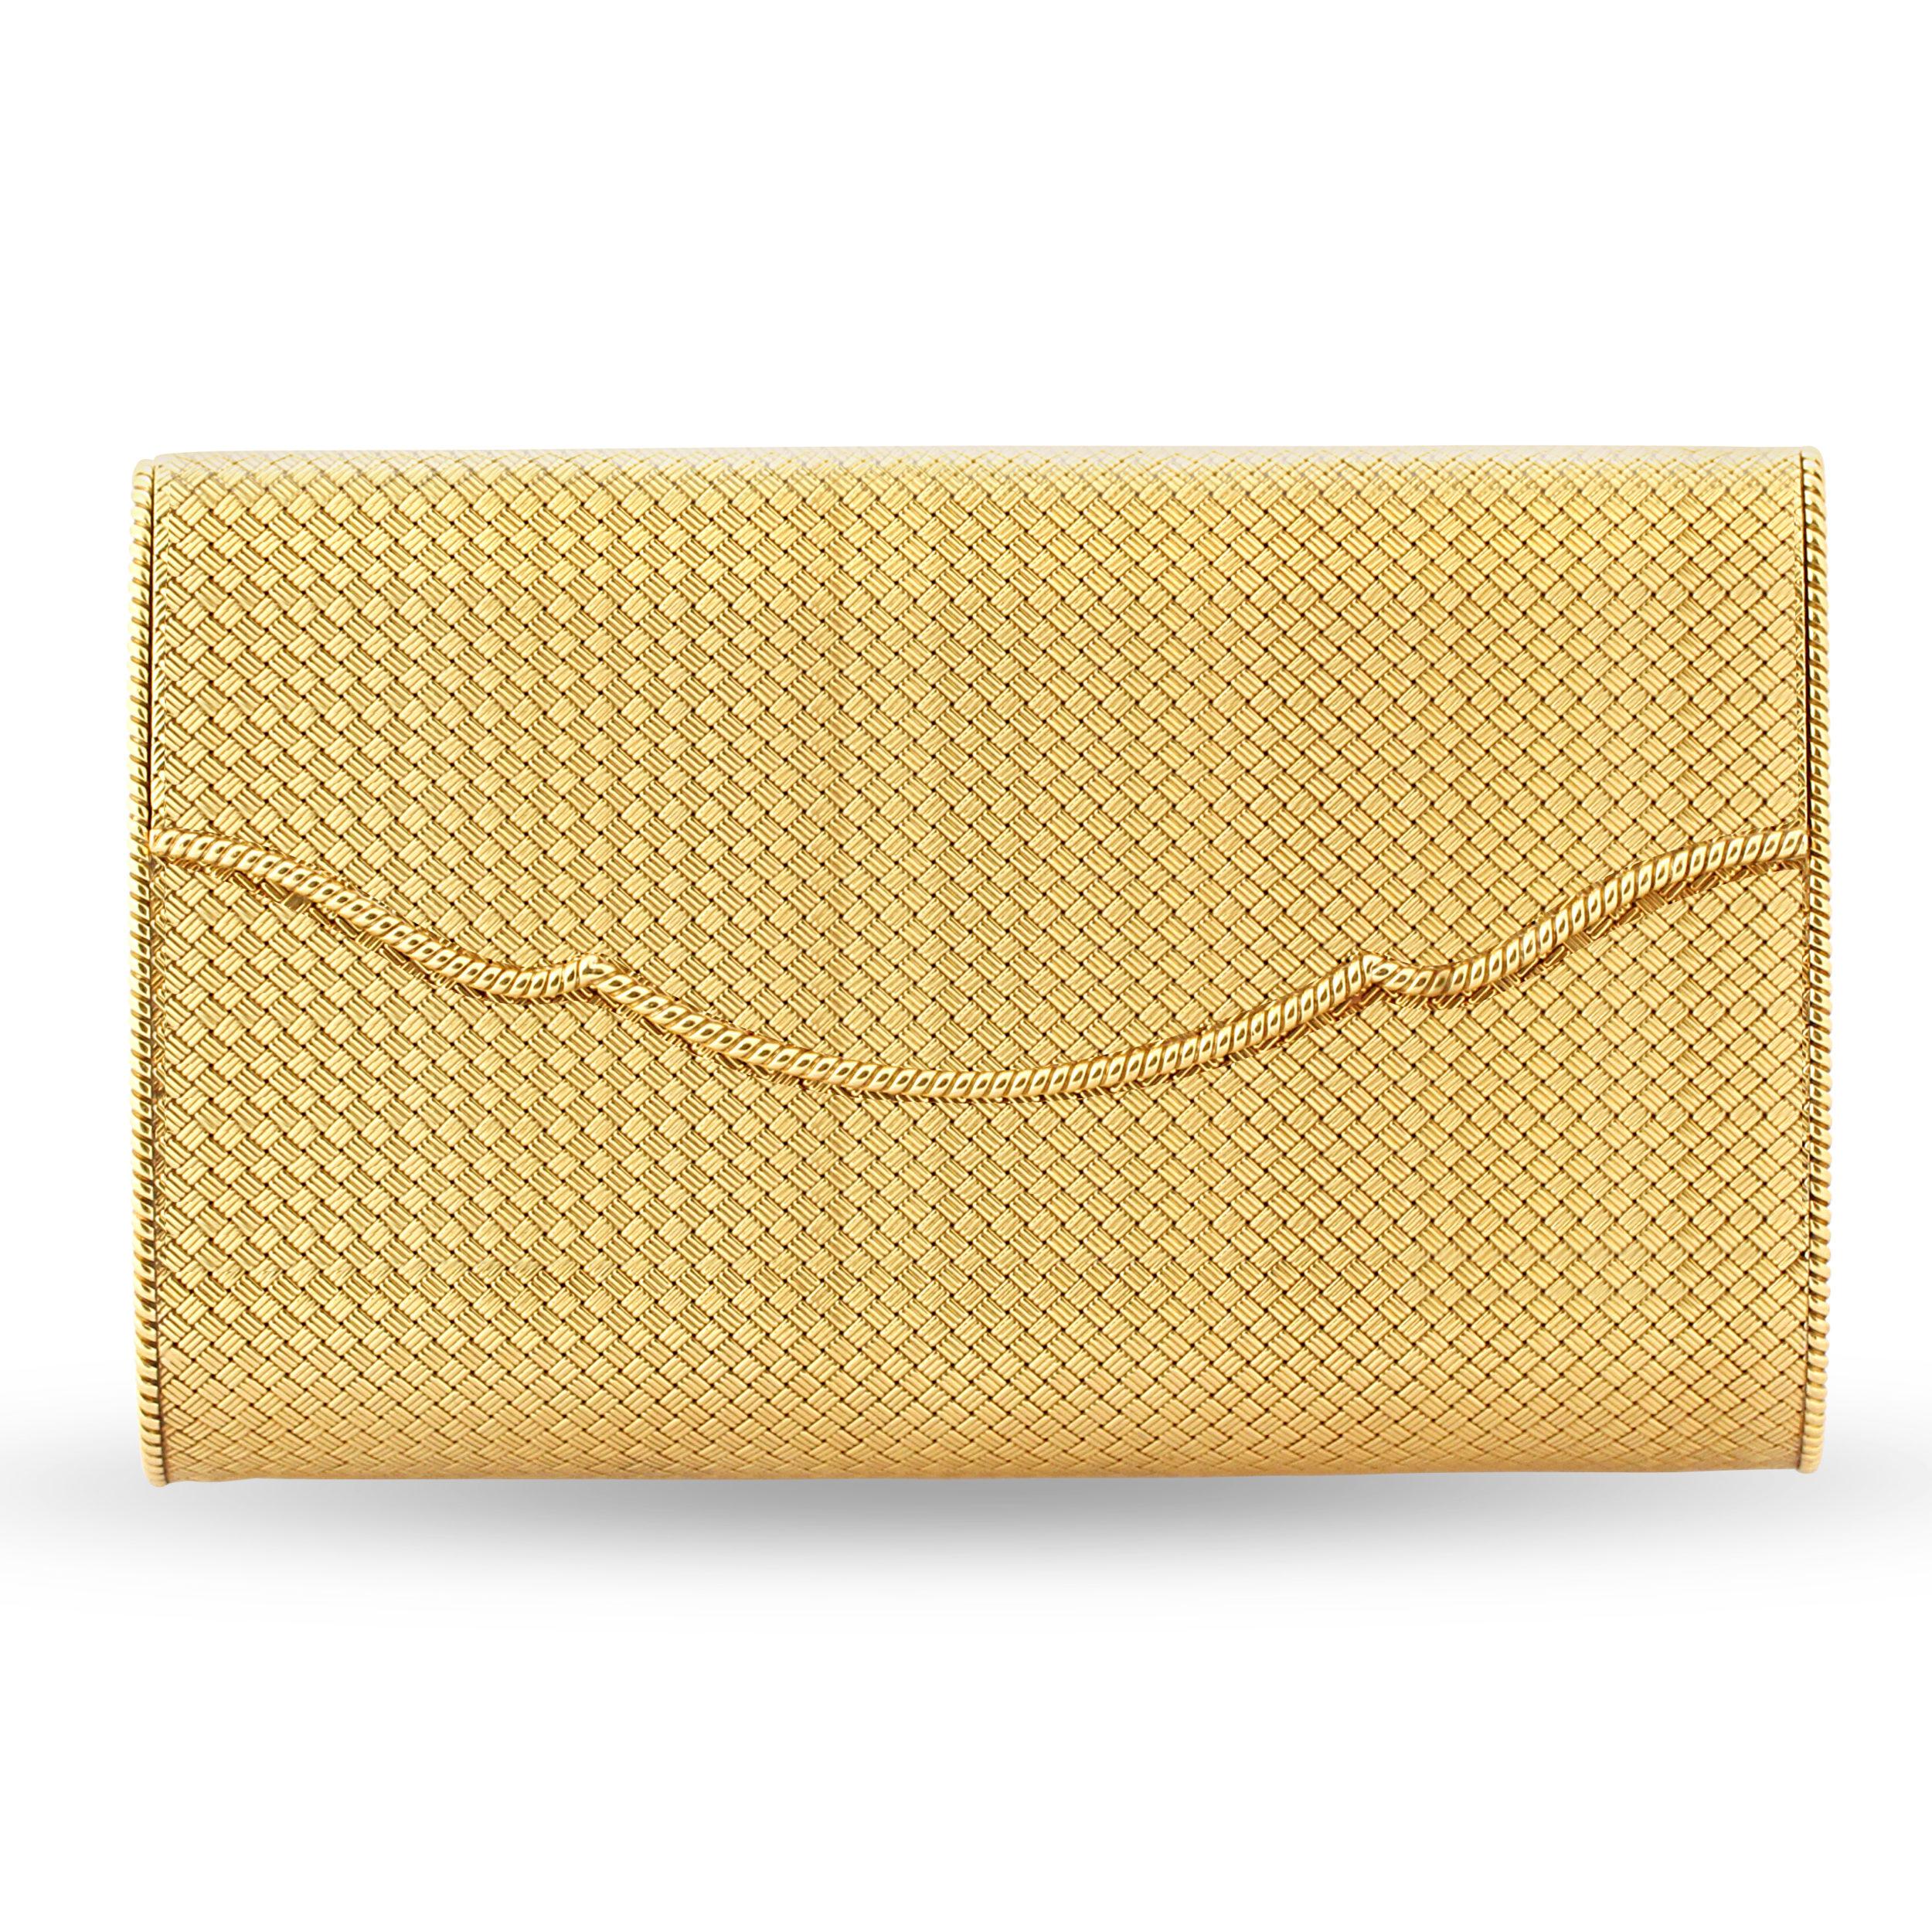 Women's 1950s Gold Evening Bag by Cartier